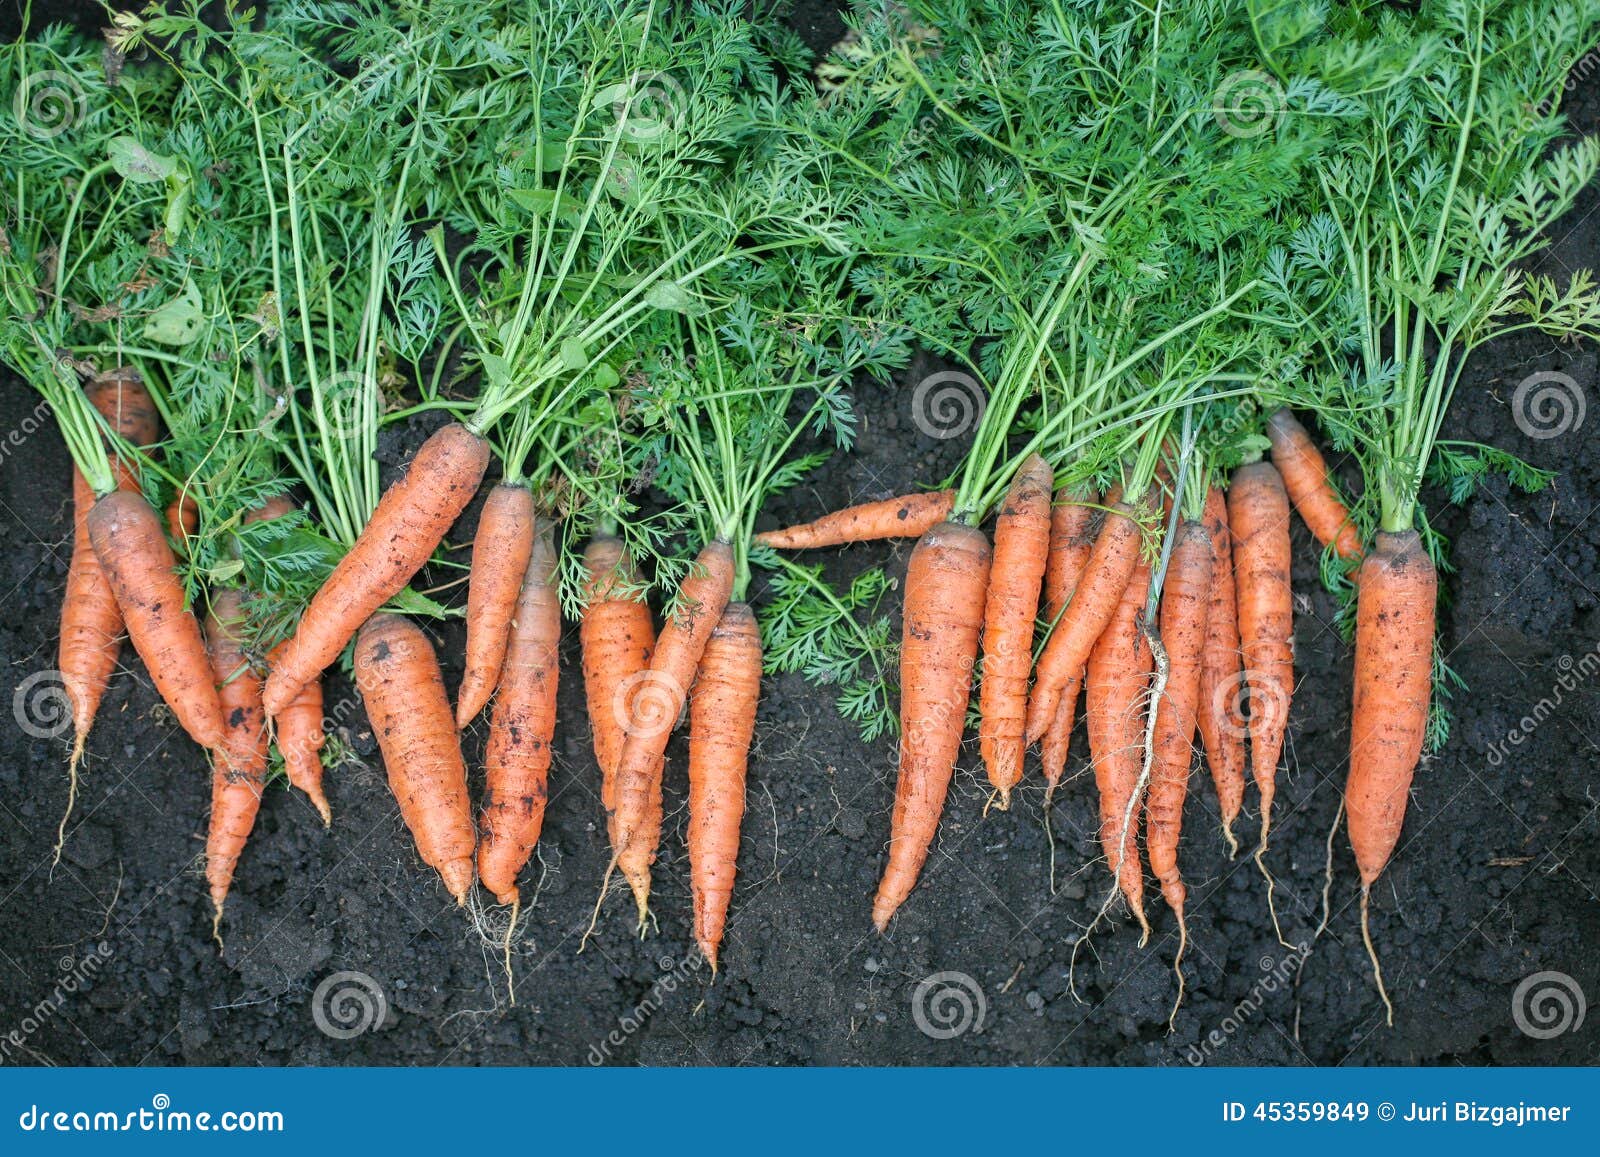 К чему снится морковь свежая. Морковь Парижская Каротель. Рост моркови. Сорт моркови крестьянка. Морковь свежая.